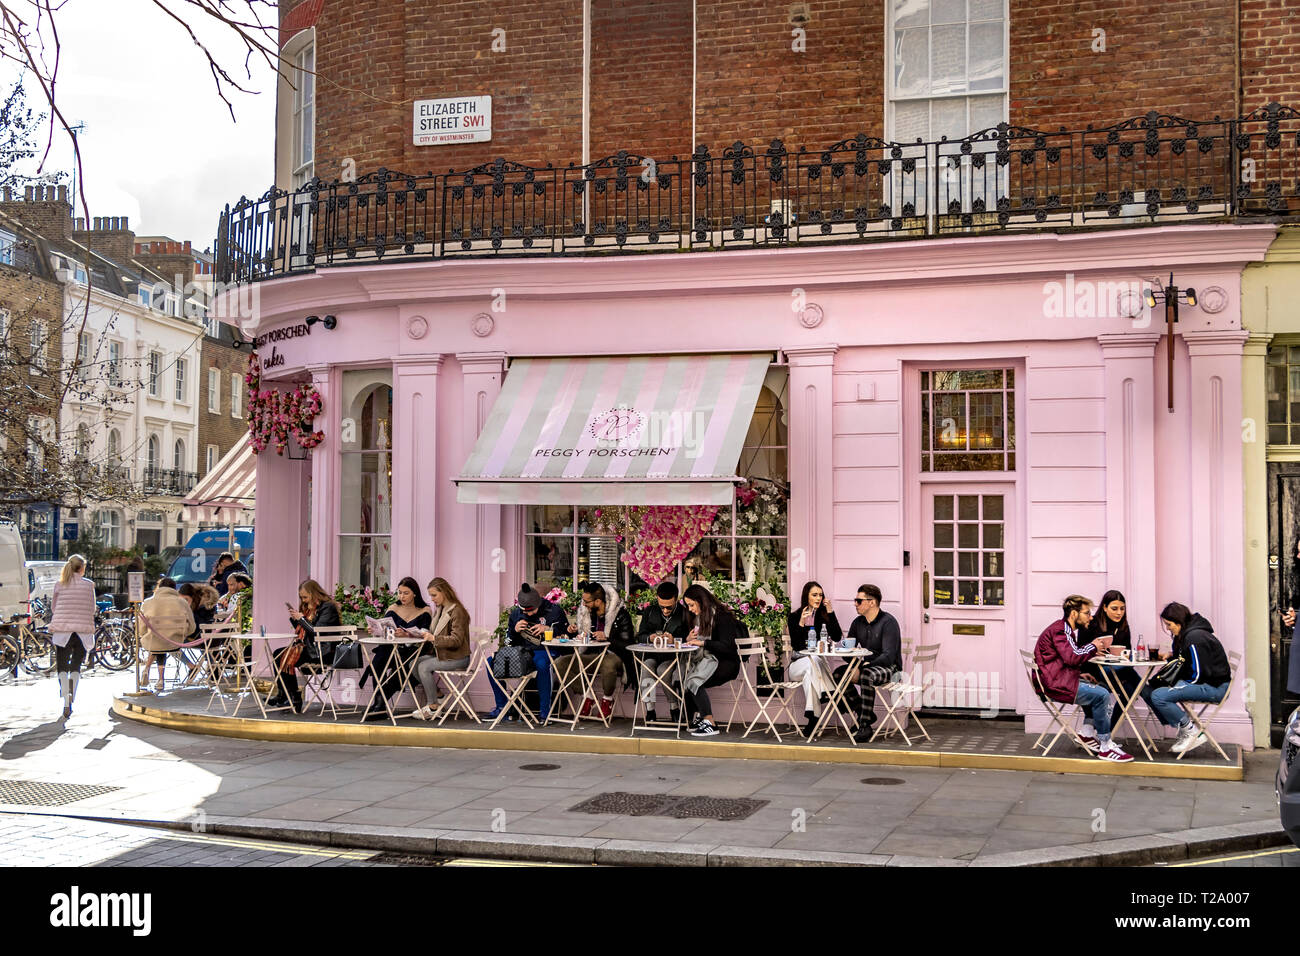 Les gens assis à l'extérieur de Peggy Porschen gâteaux, à Belgravia , un magasin de gâteaux connu pour son extérieur rose pastel frappant, Londres, Royaume-Uni Banque D'Images